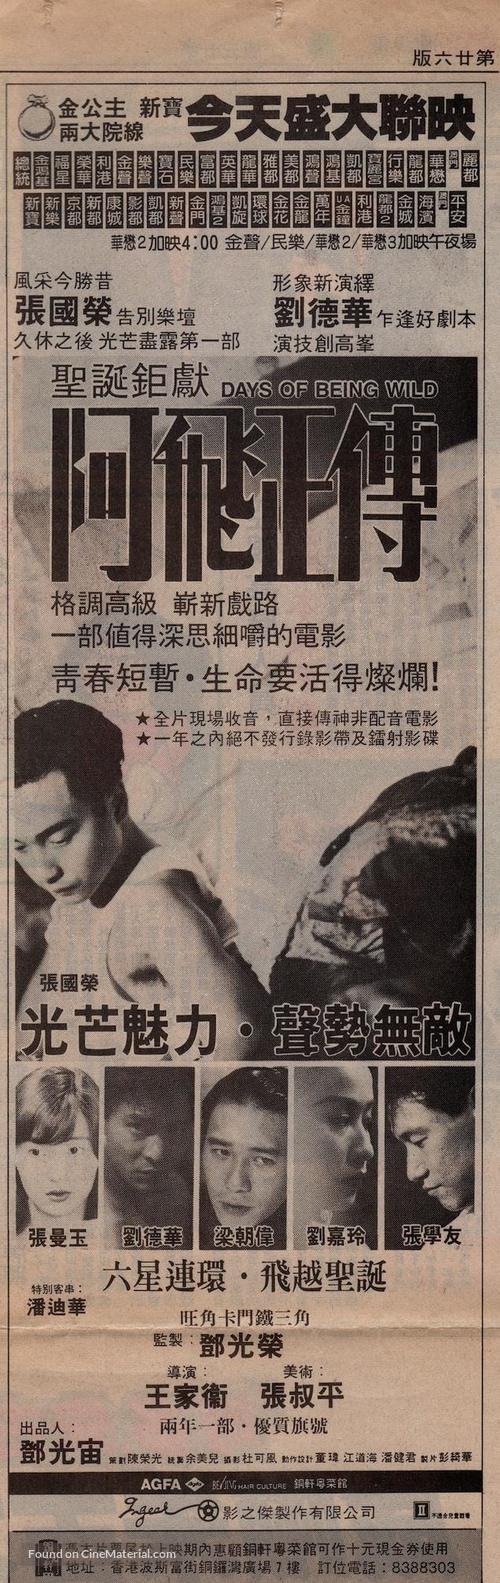 Ah Fei jing juen - Hong Kong poster